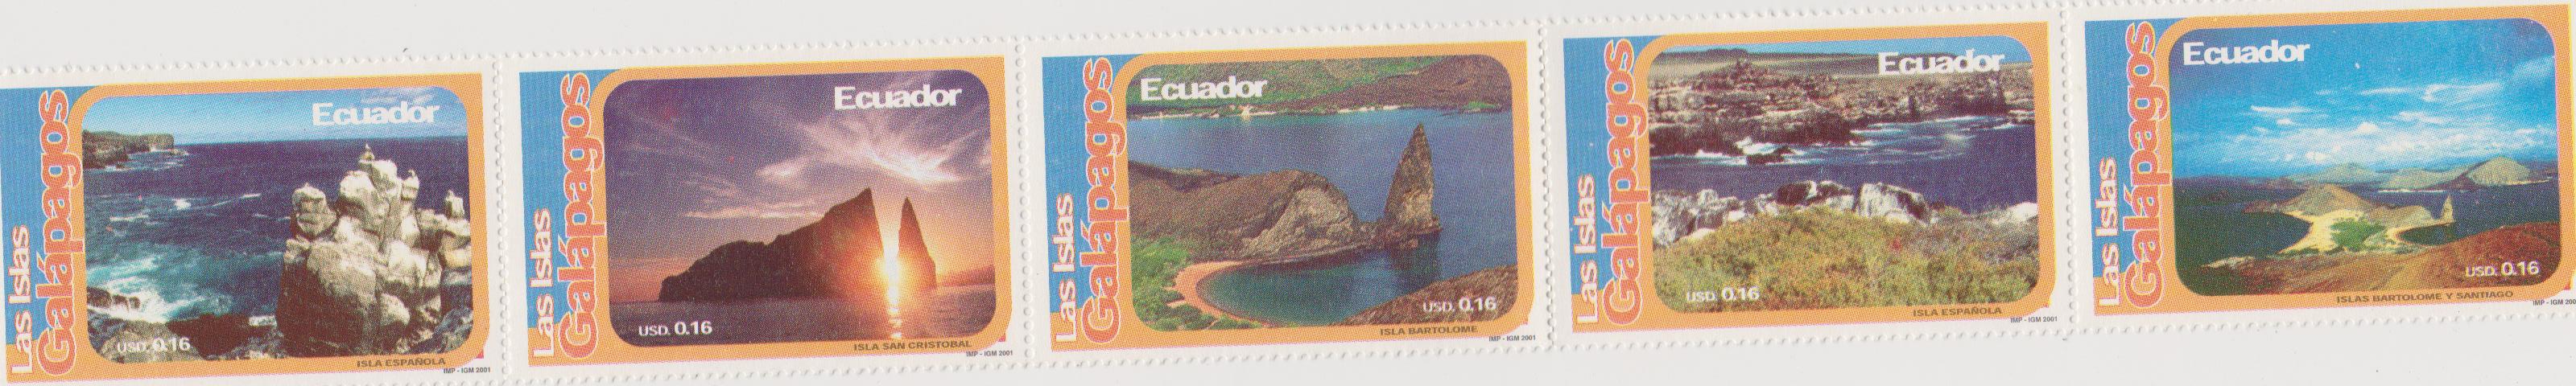 Ecuador galapagos 001